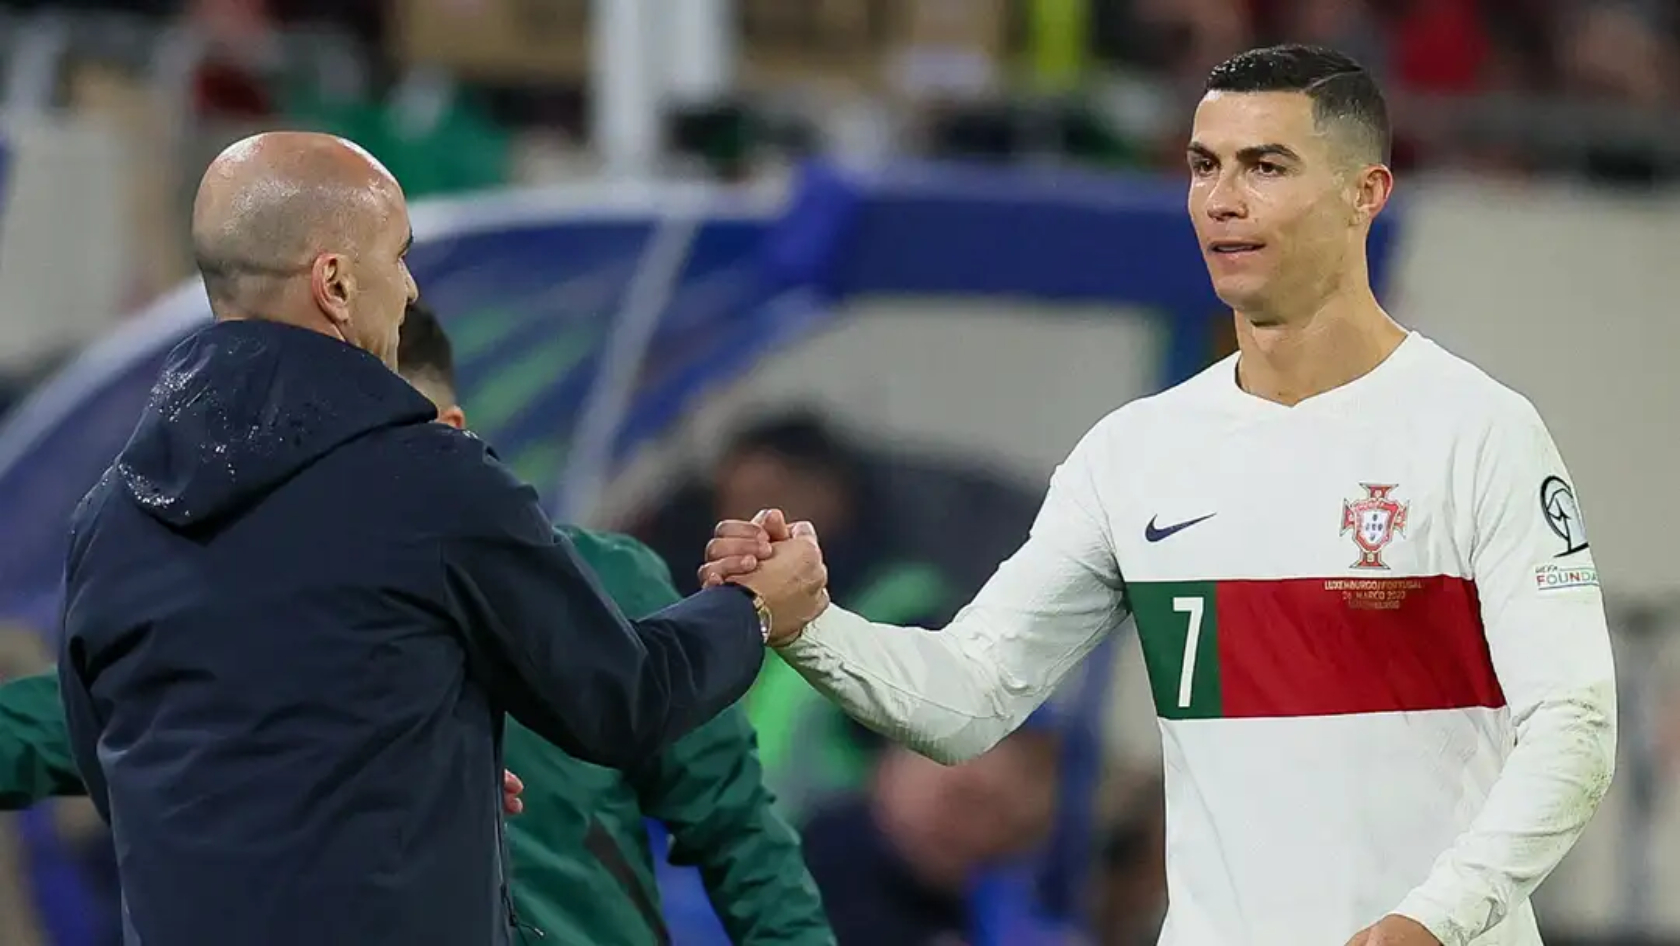 Roberto Marinez réagit à la performance de Ronaldo alors que le Portugal bat la Bosnie